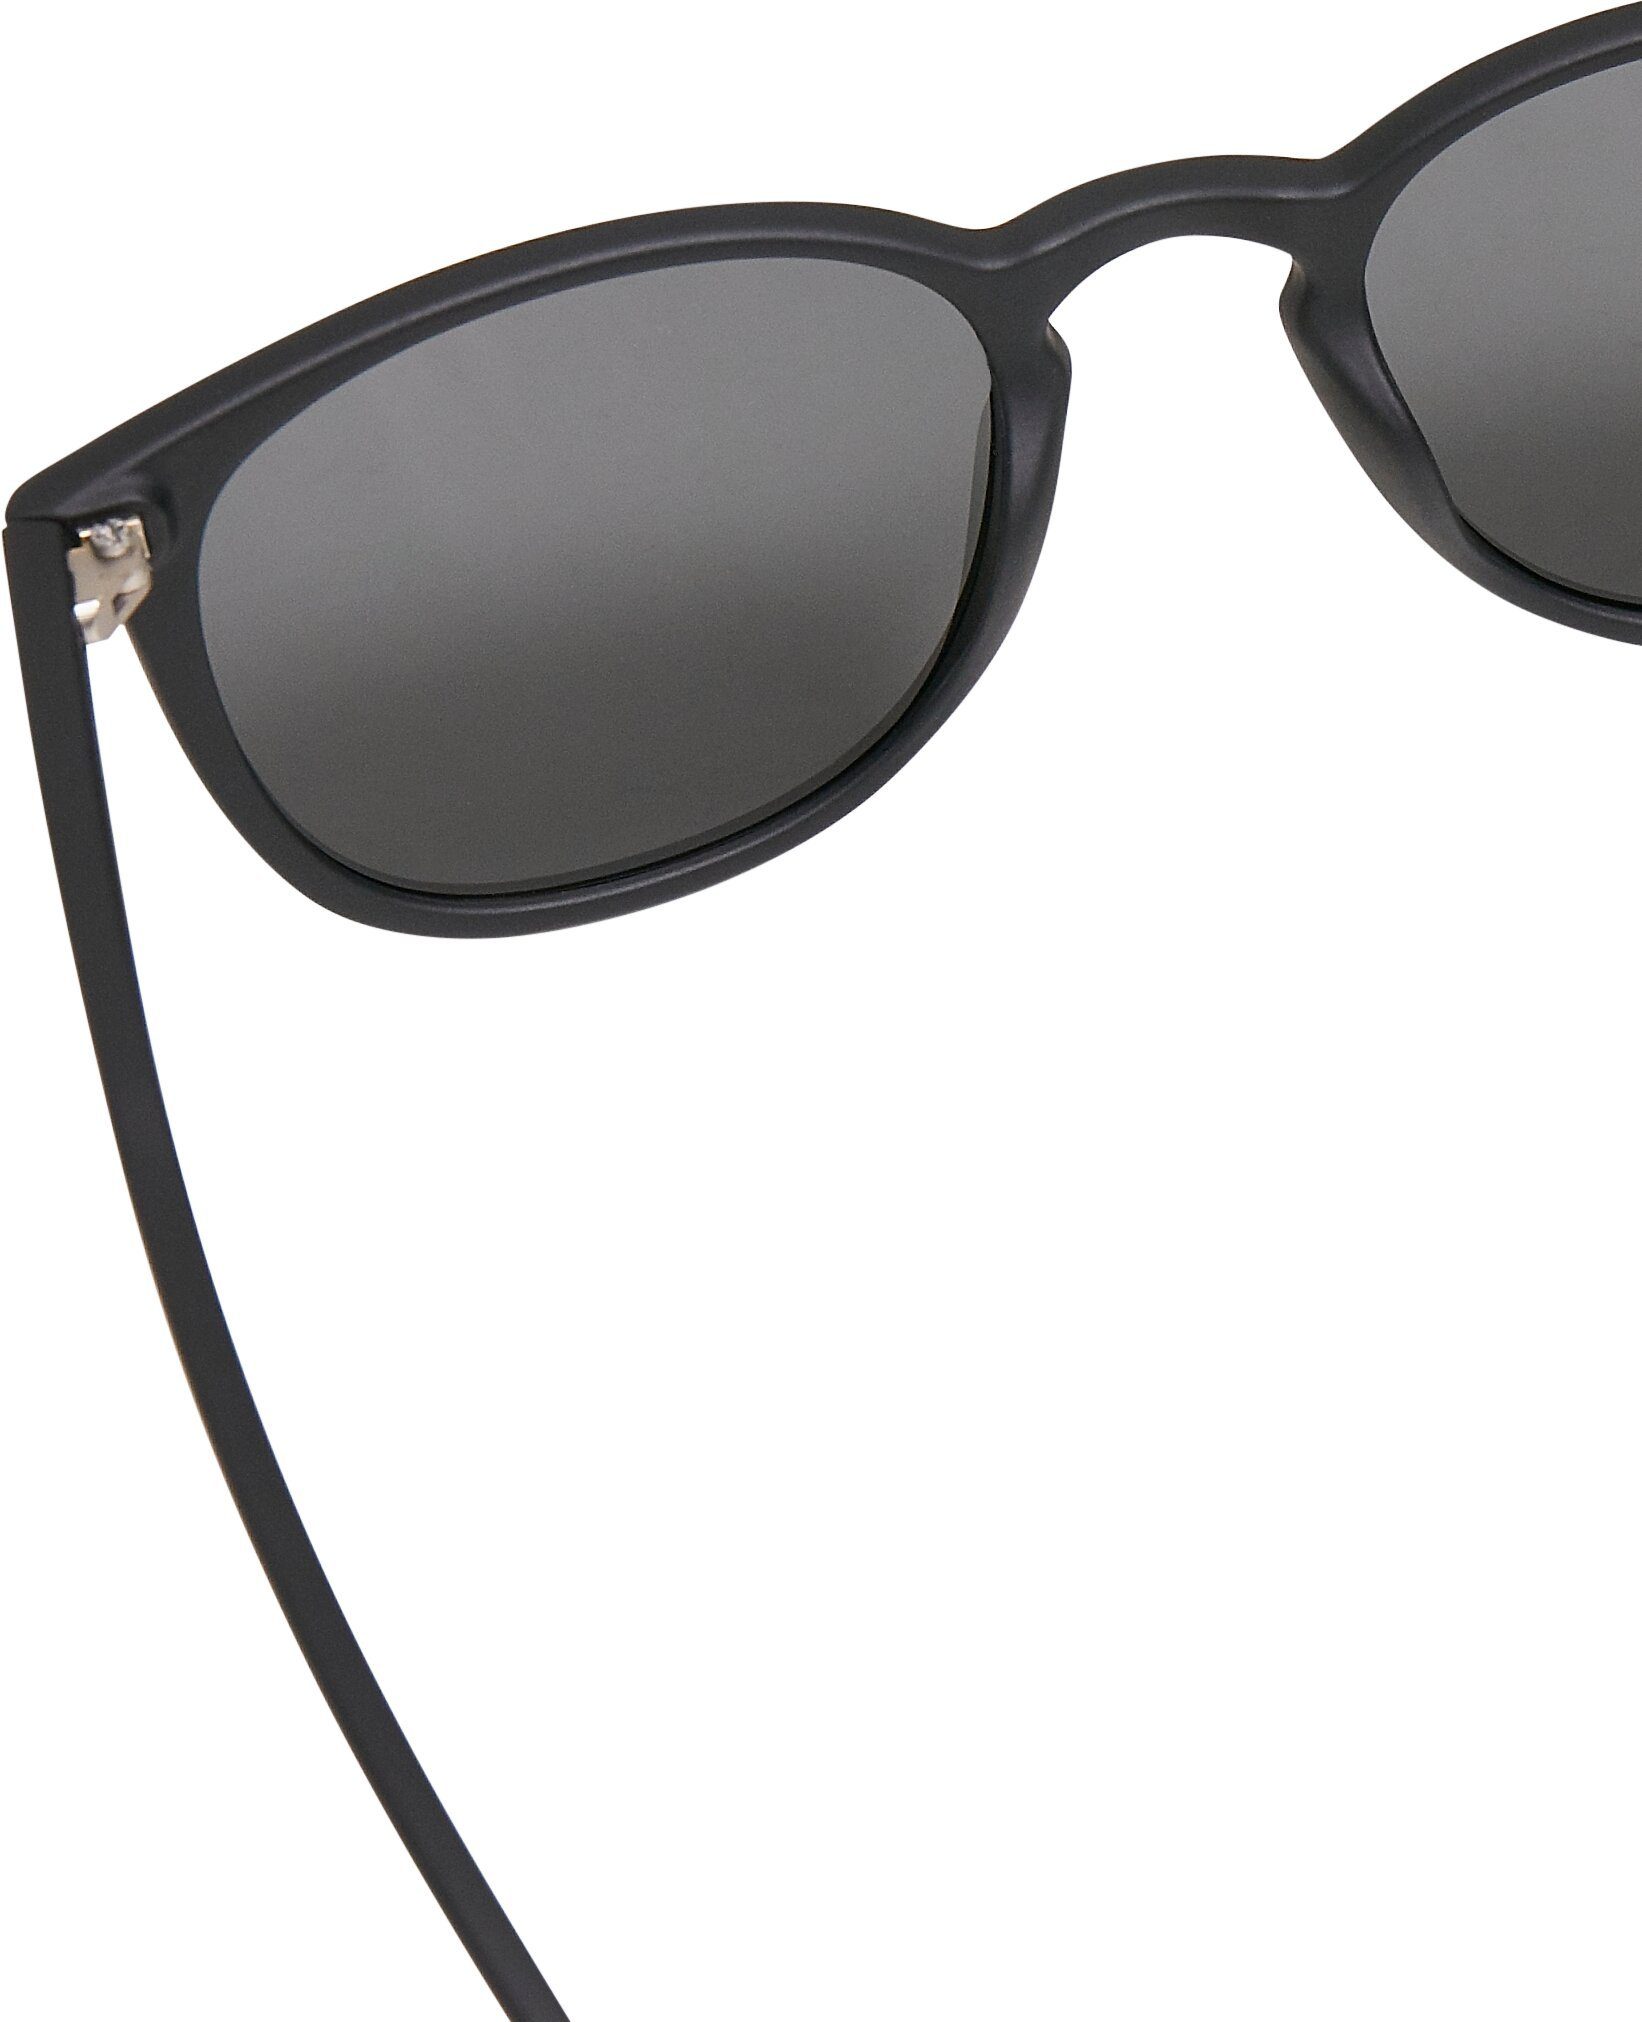 Sonnenbrille Accessoires CLASSICS URBAN black/grey Arthur UC Sunglasses